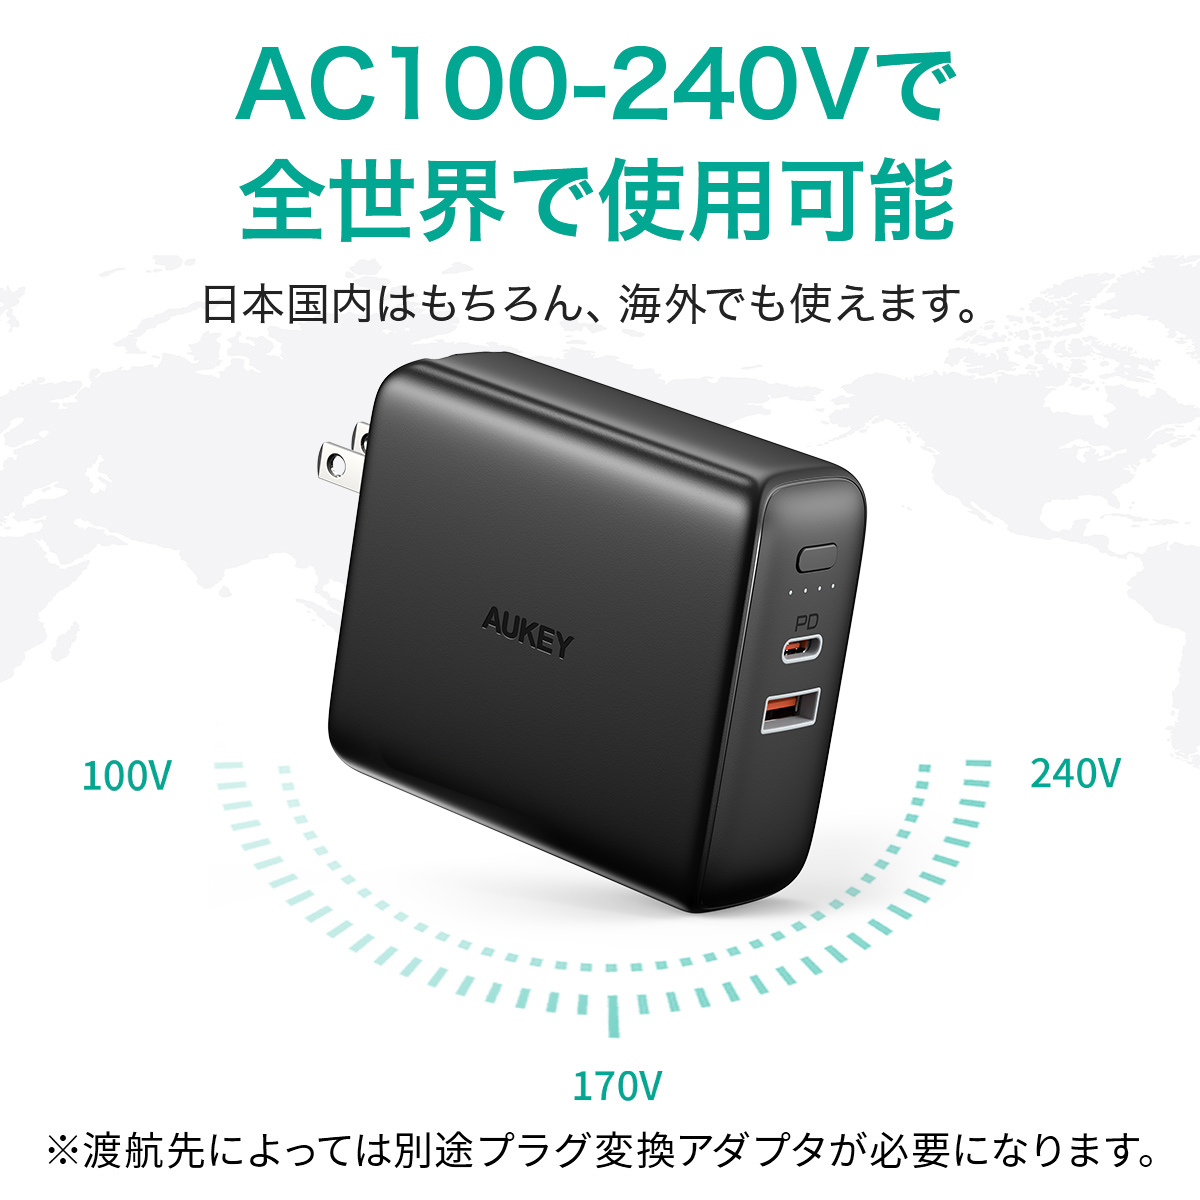 AC100-240Vで全世界で使用可能